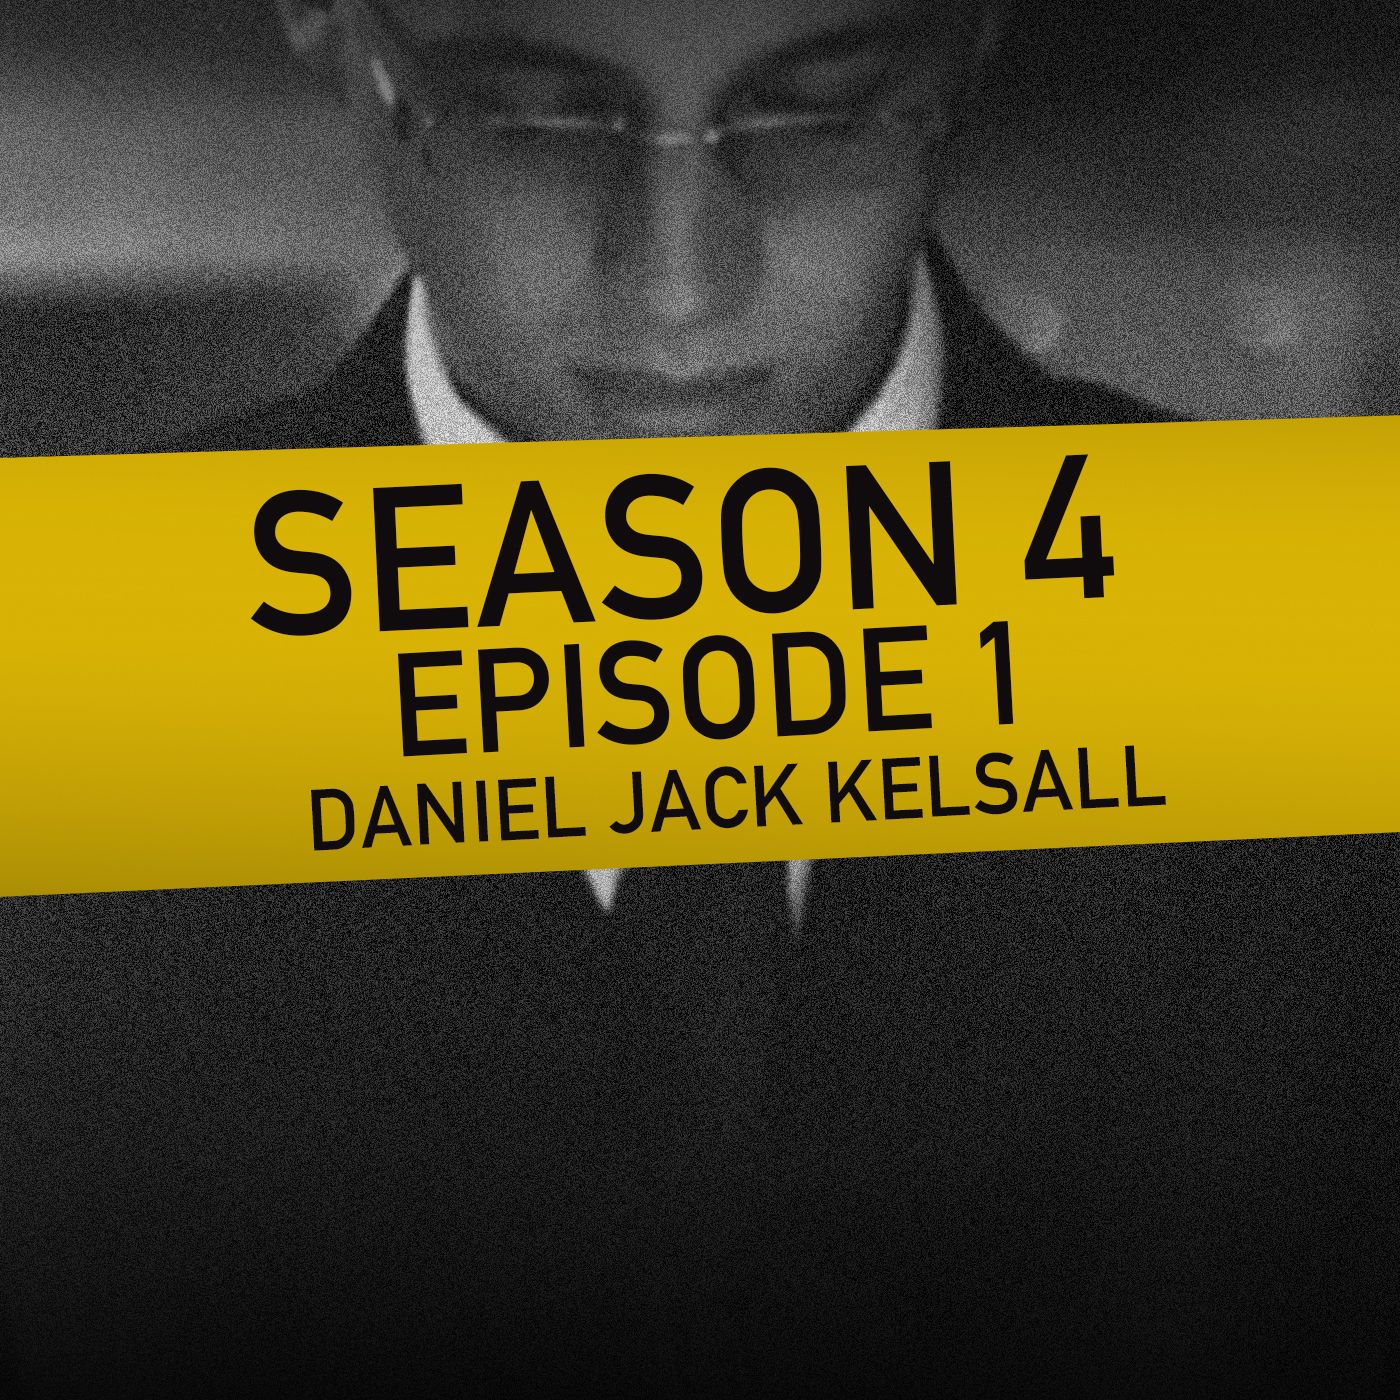 S4 Ep1: Daniel Jack Kelsall